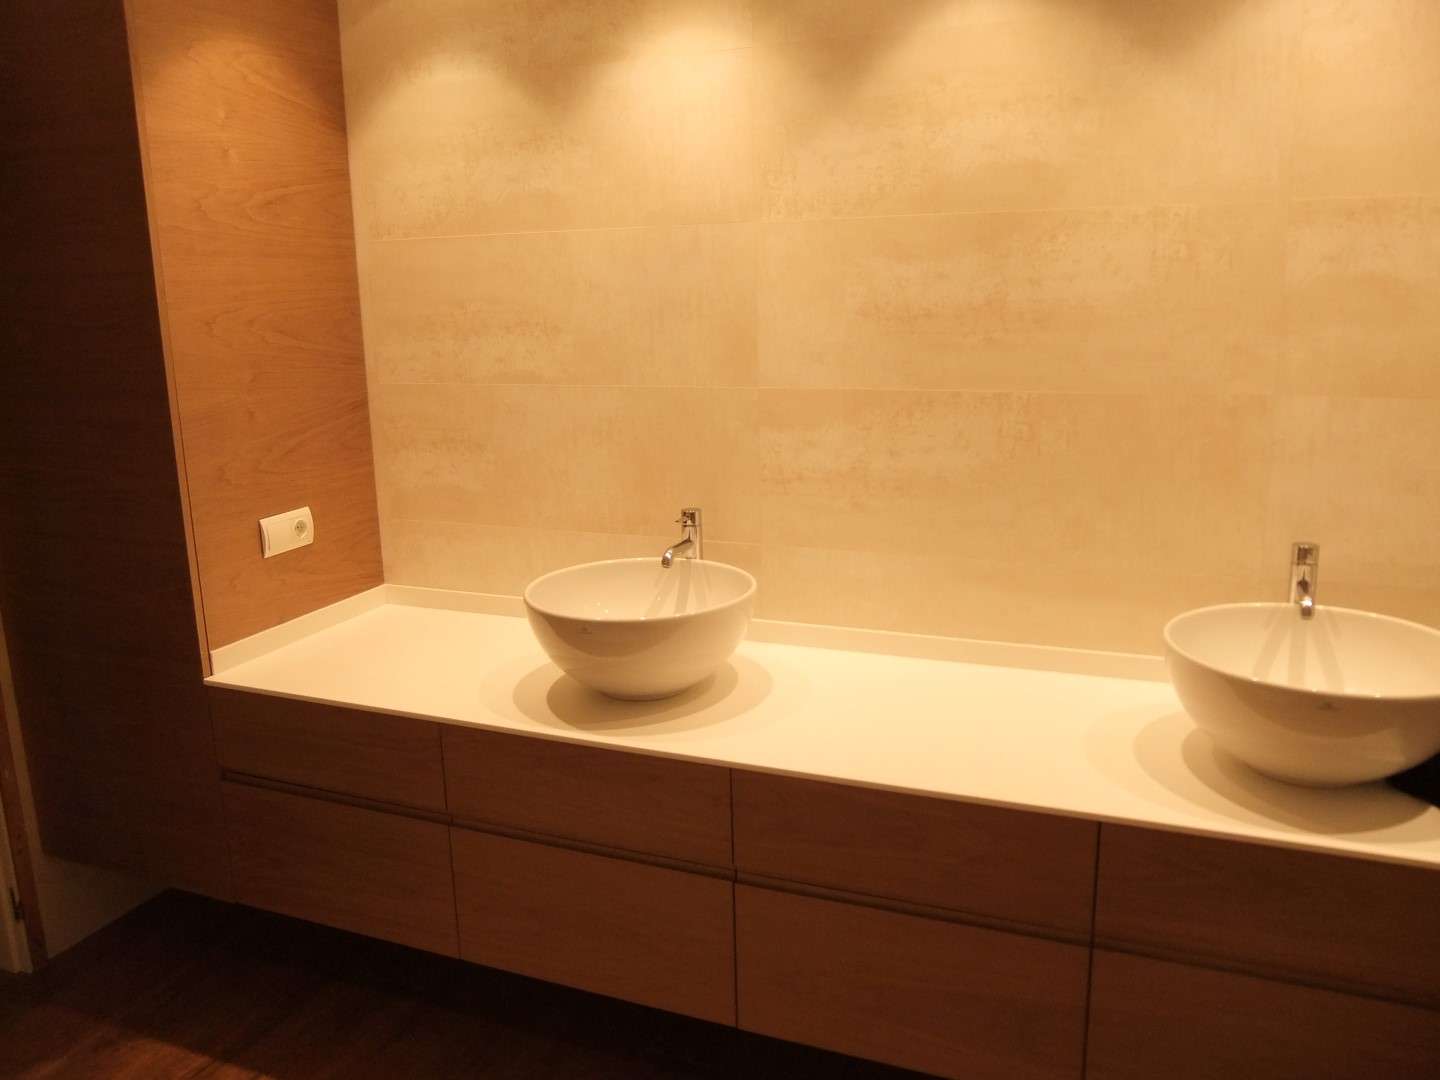 Baño de diseño con dos lavados modernos en un mueble integrado hecho a medida